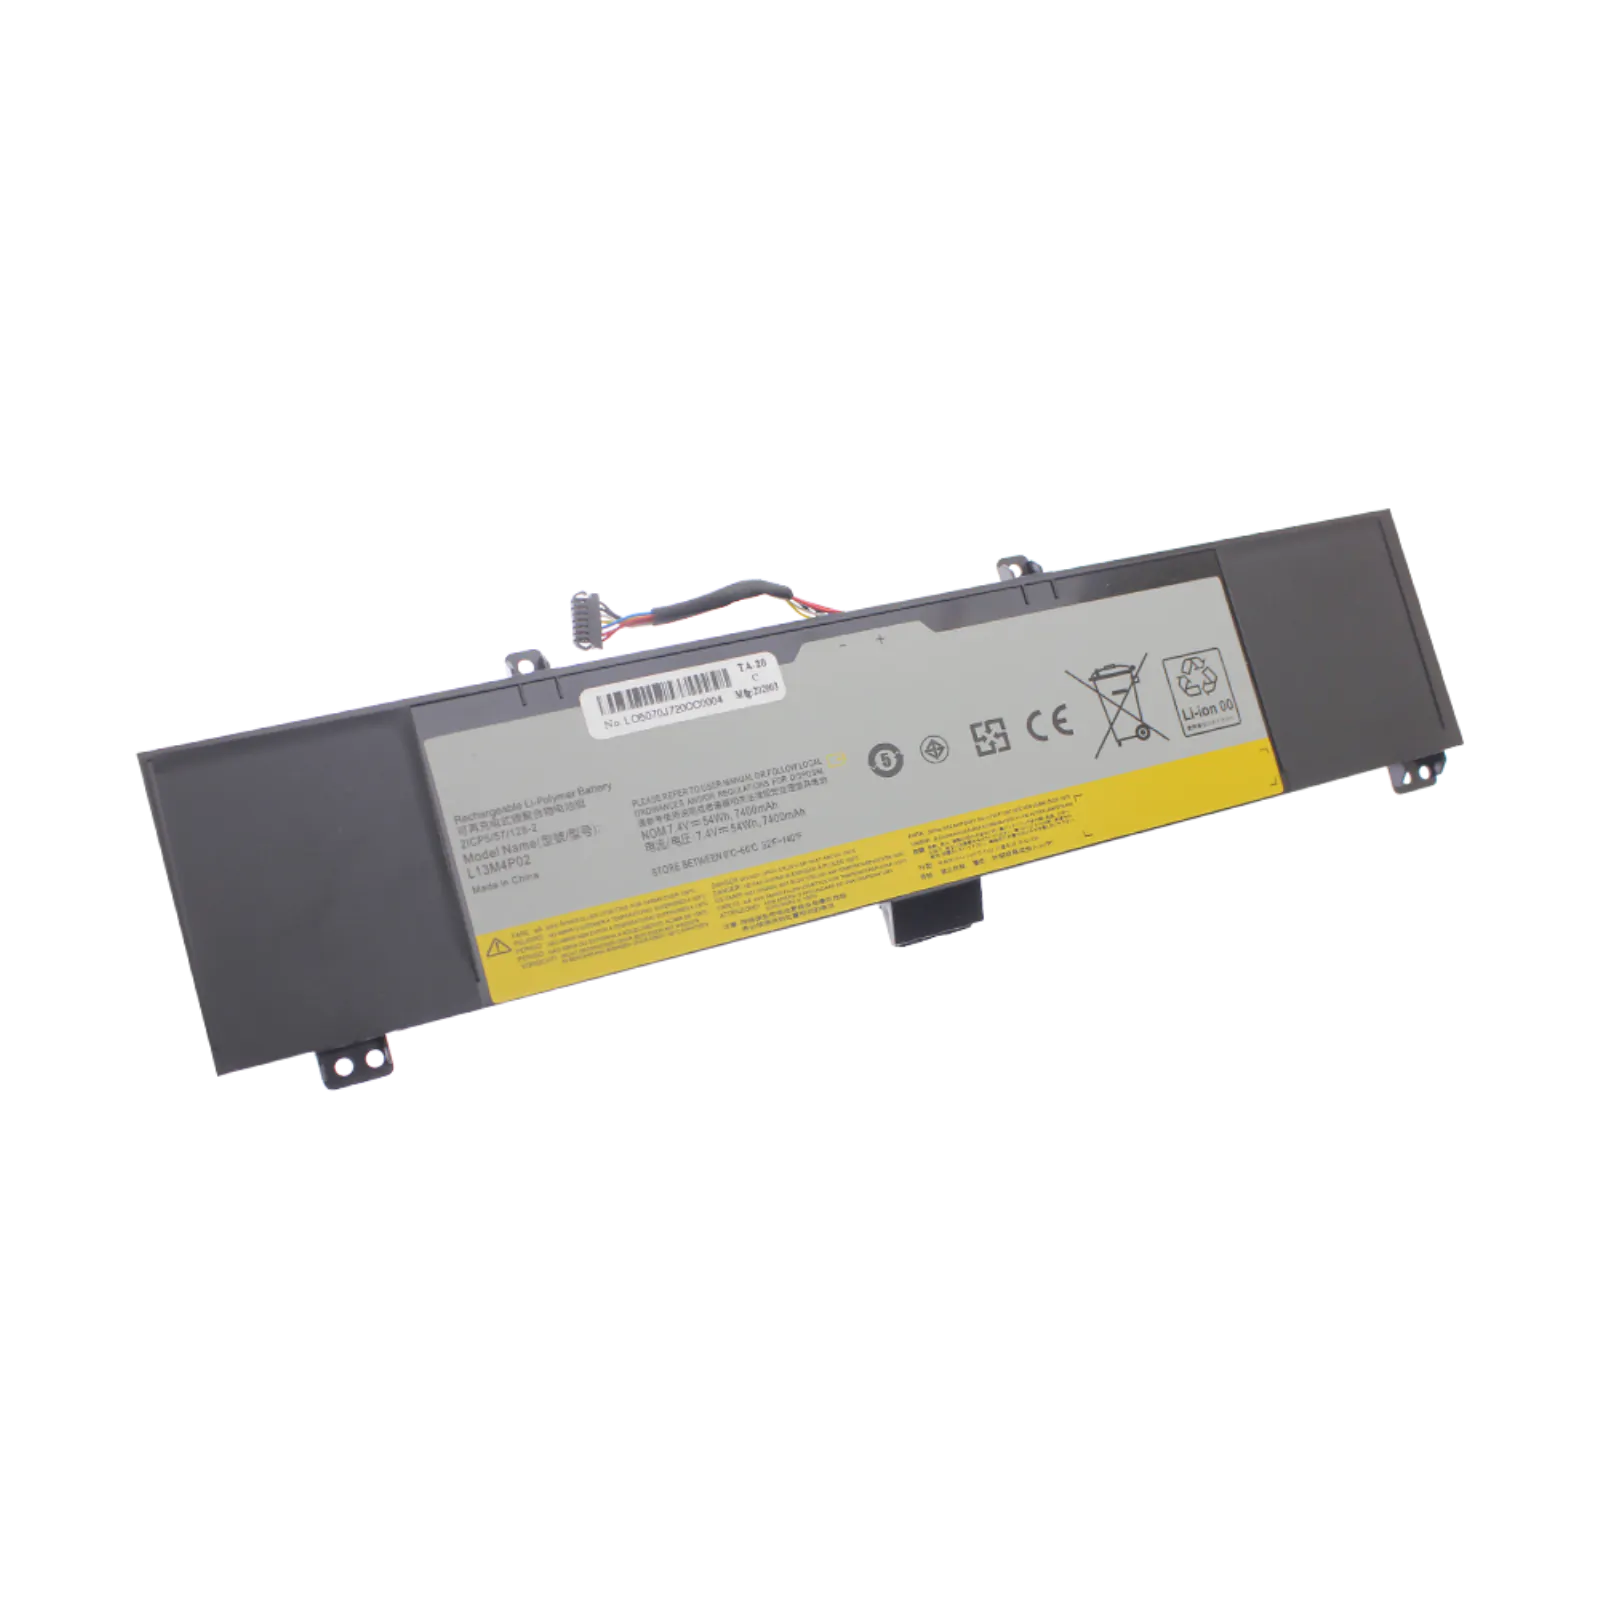 Lenovo ideaPad Erazer Y50, Y70 Serisi Batarya - Pil (Pars Power)